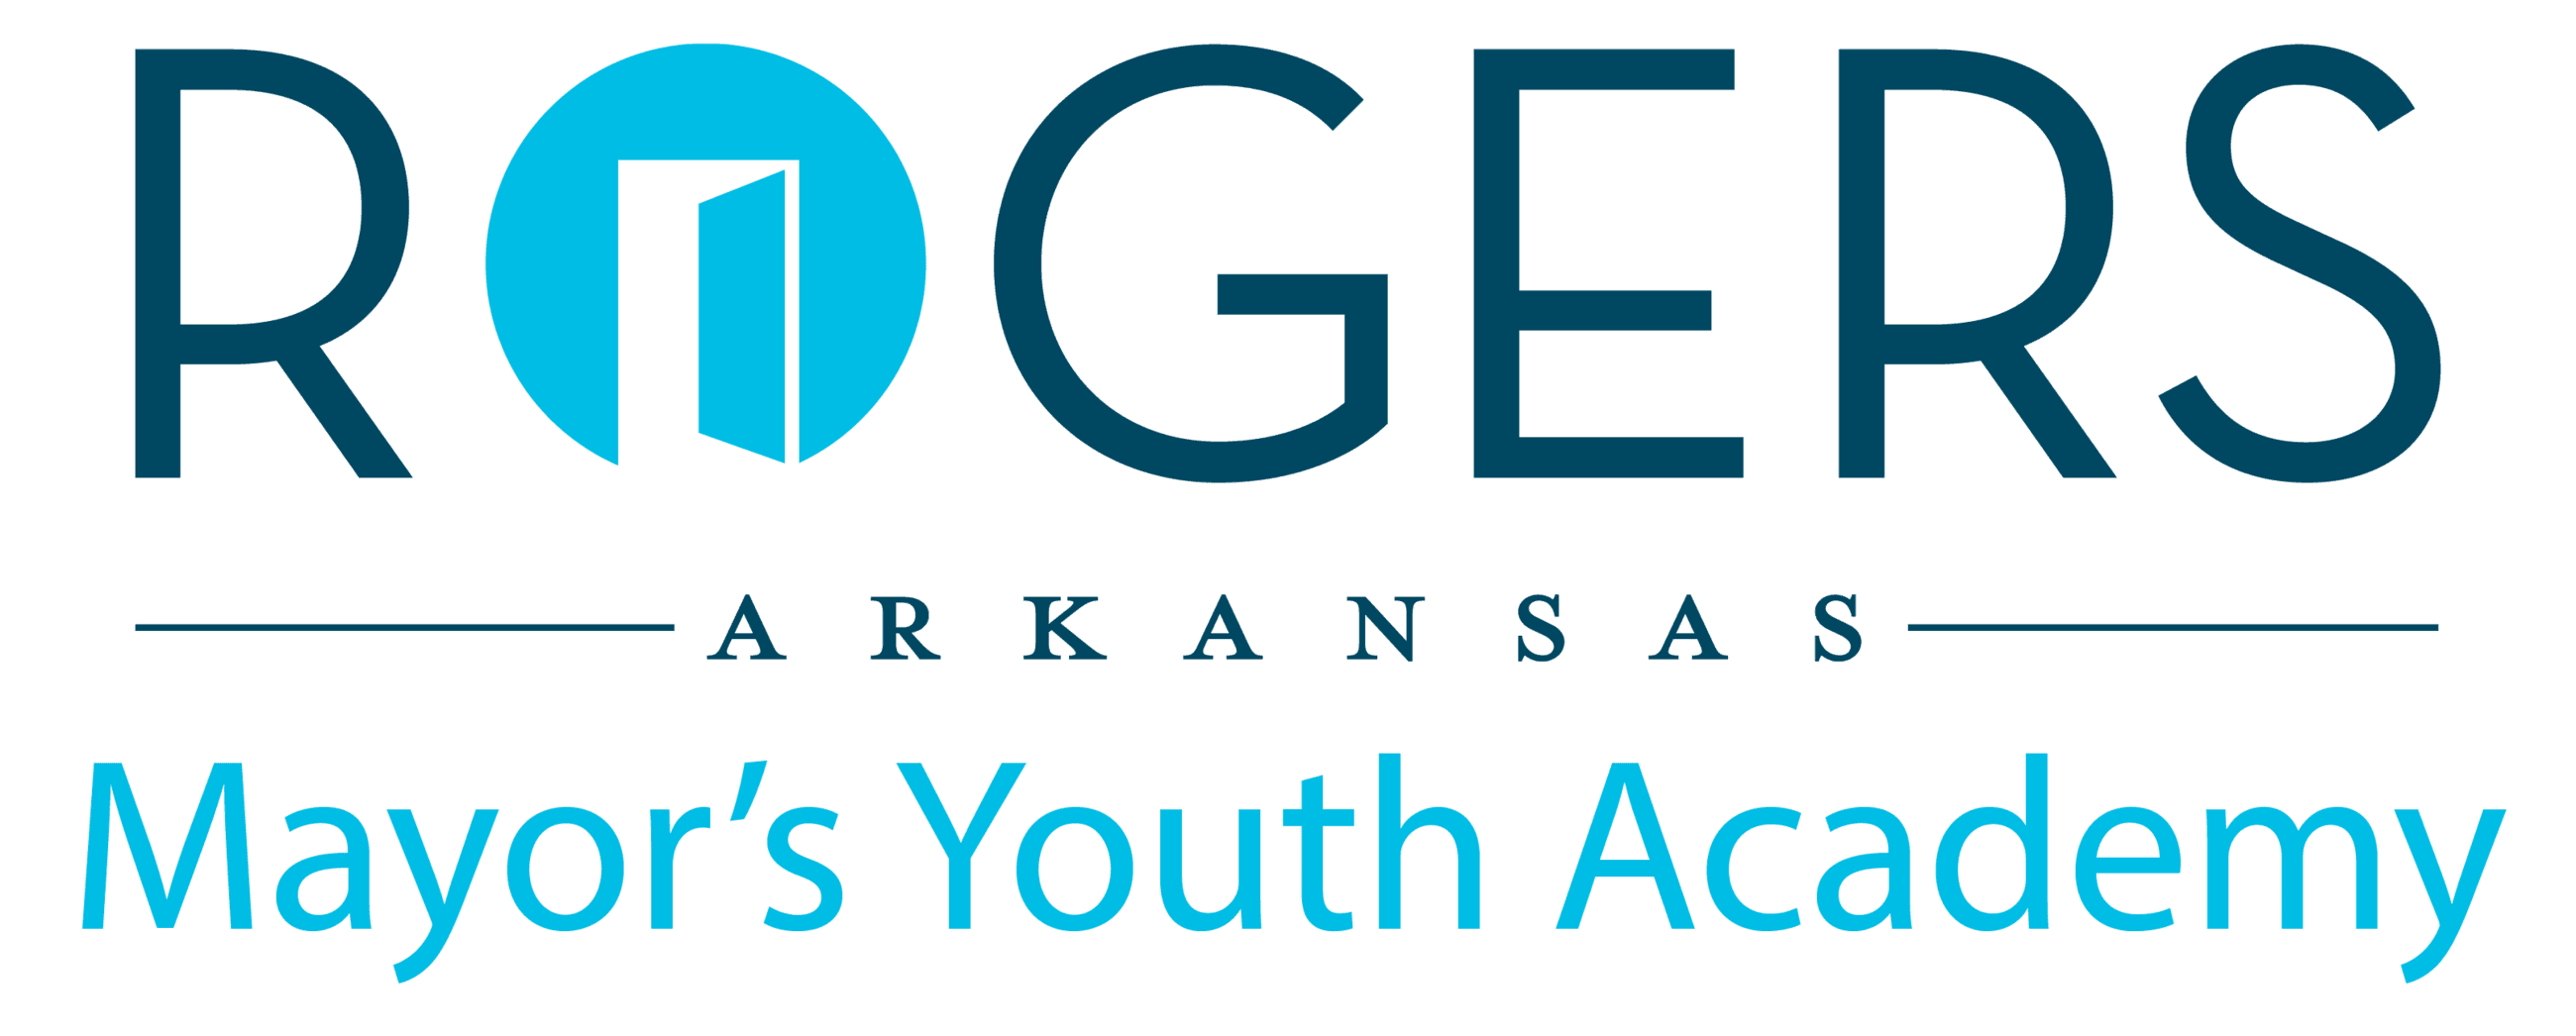 Mayors youth academy logo